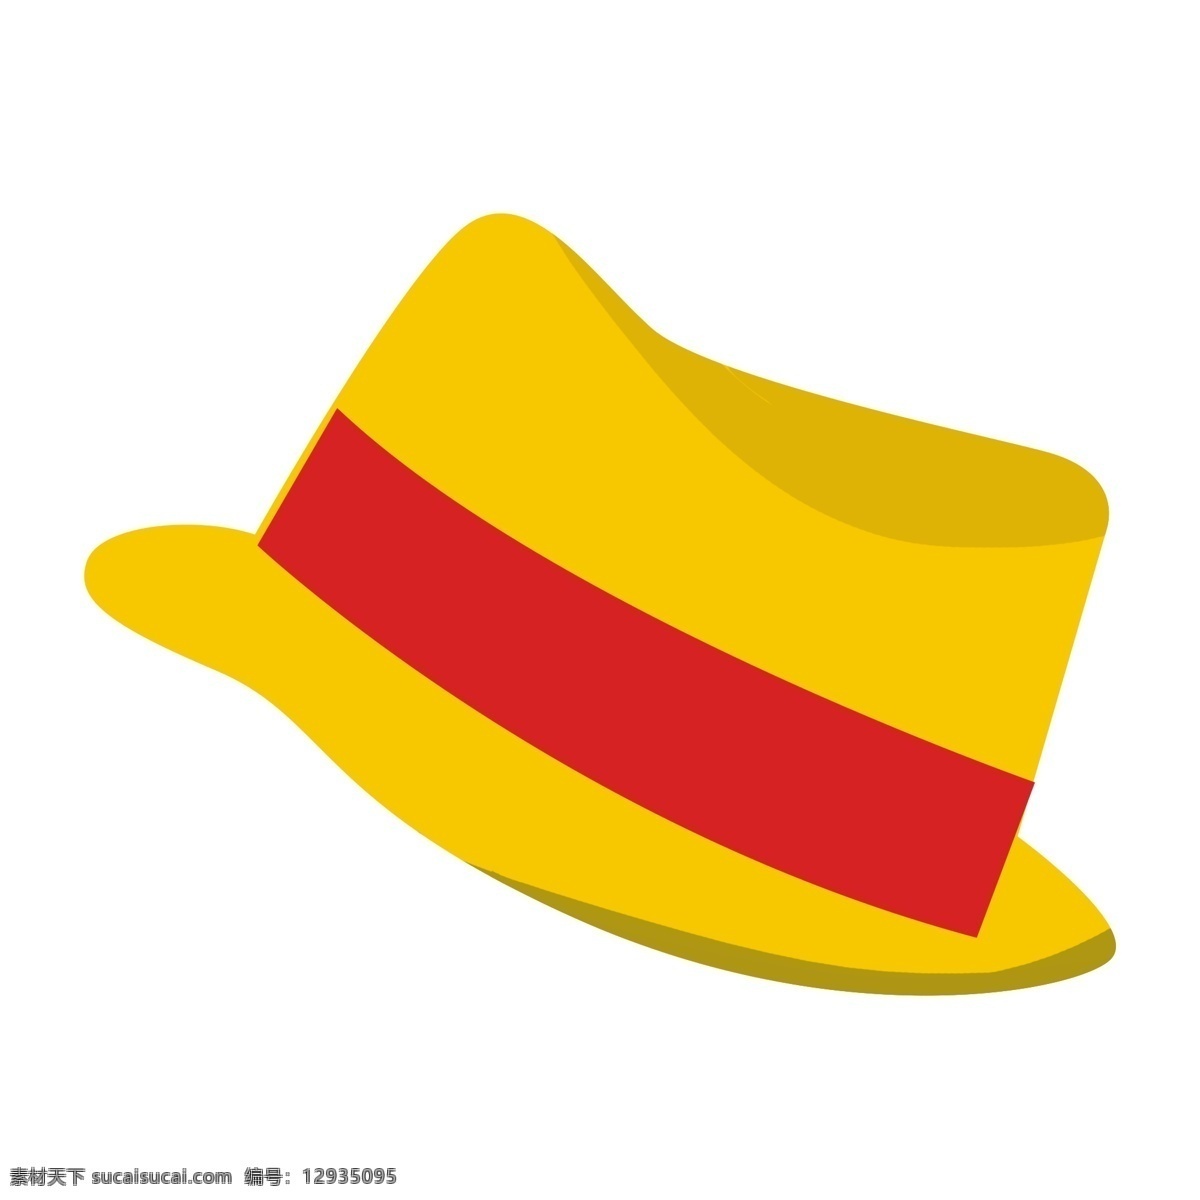 金色 草帽 遮阳帽 免 抠 卡通 矢量图案 太阳帽 沙滩帽 装饰图案